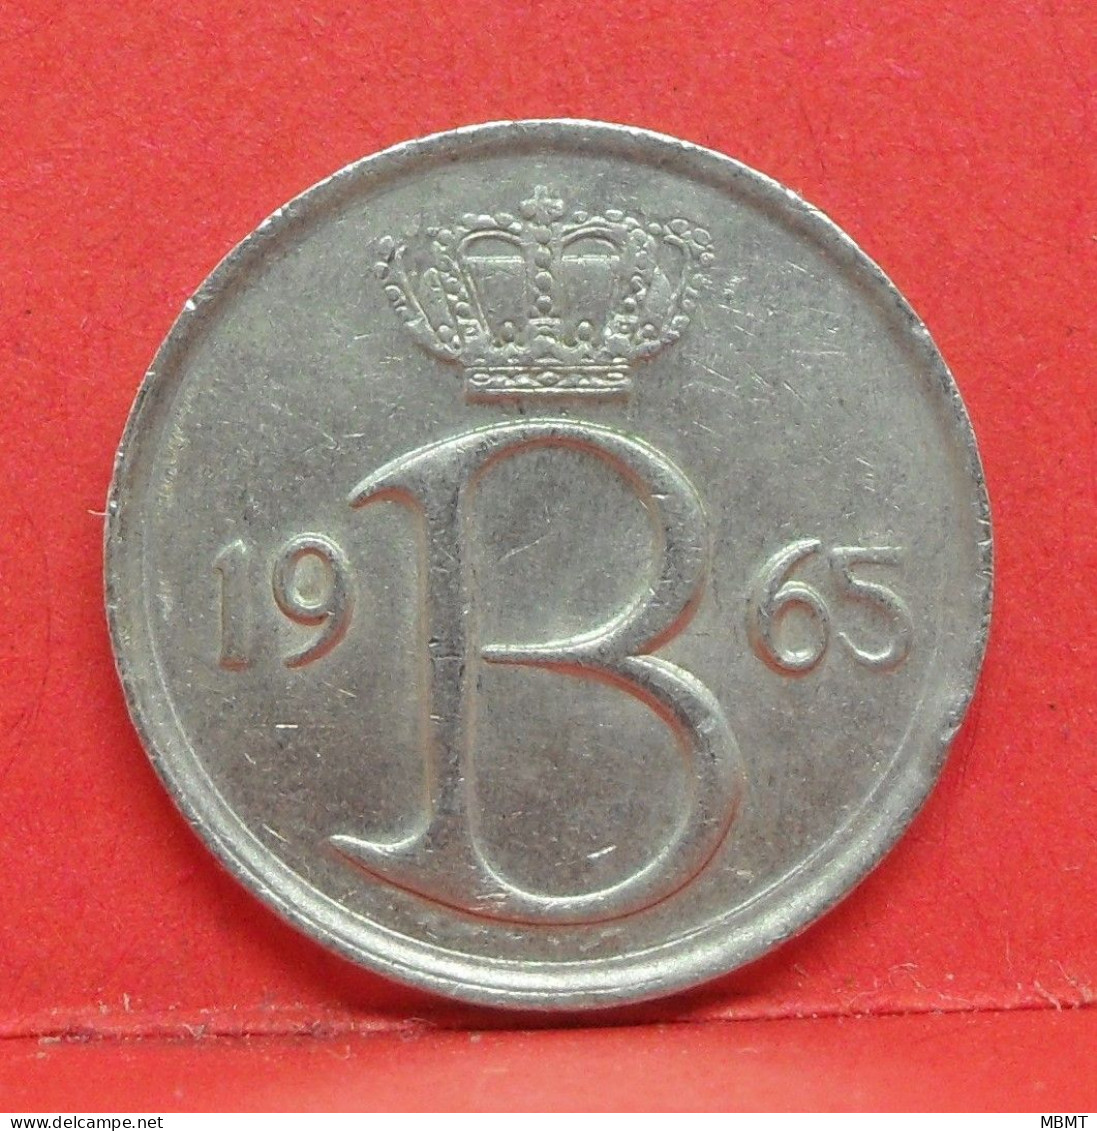 25 Centimes 1965 - TTB - Pièce Monnaie Belgique - Article N°1682 - 25 Centimes